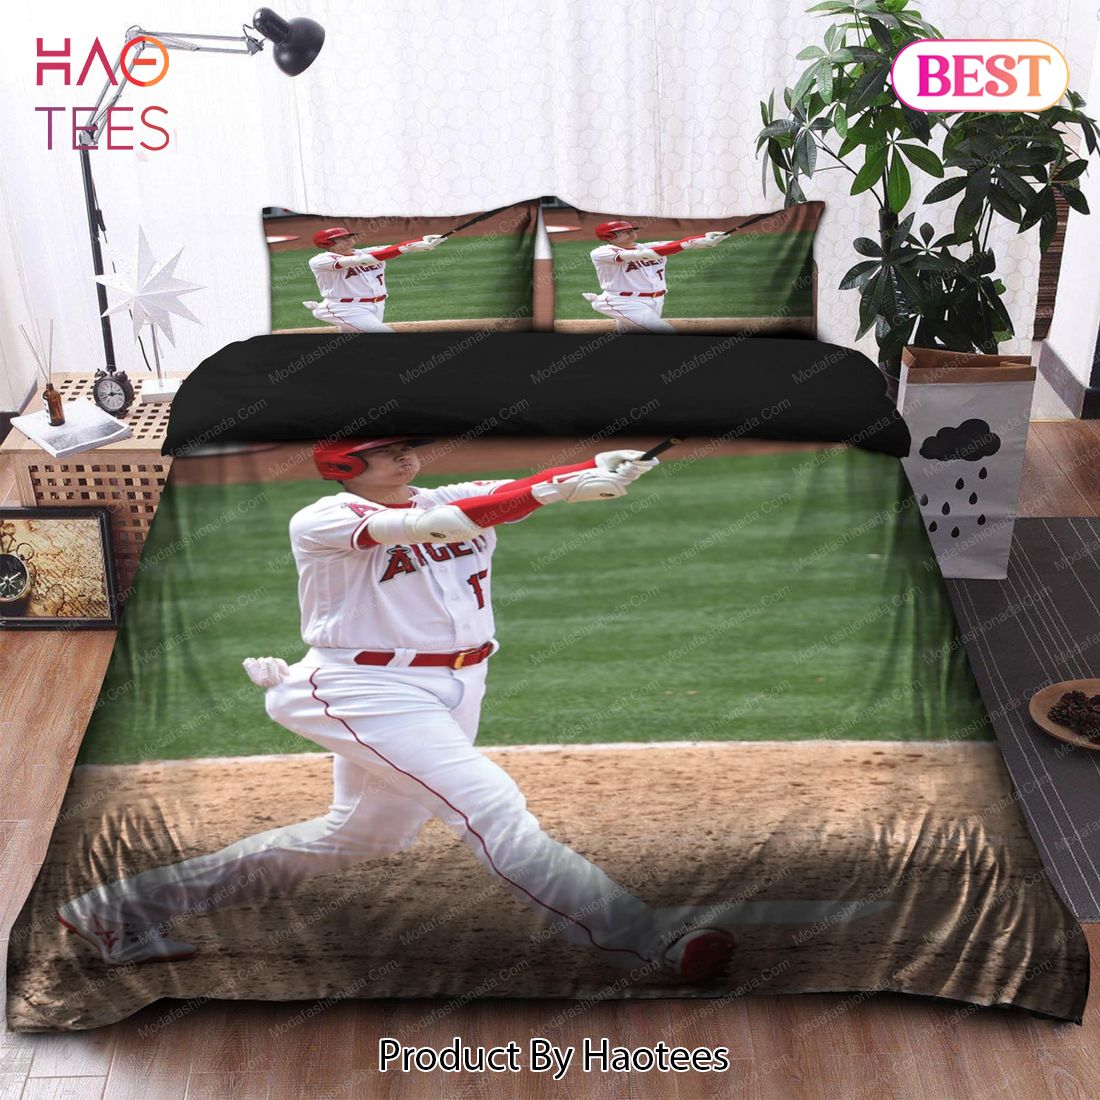 Buy Japanese Shohei Ohtani Los Angeles Angels MLB 25 Bedding Sets Bed Sets, Bedroom Sets, Comforter Sets, Duvet Cover, Bedspread